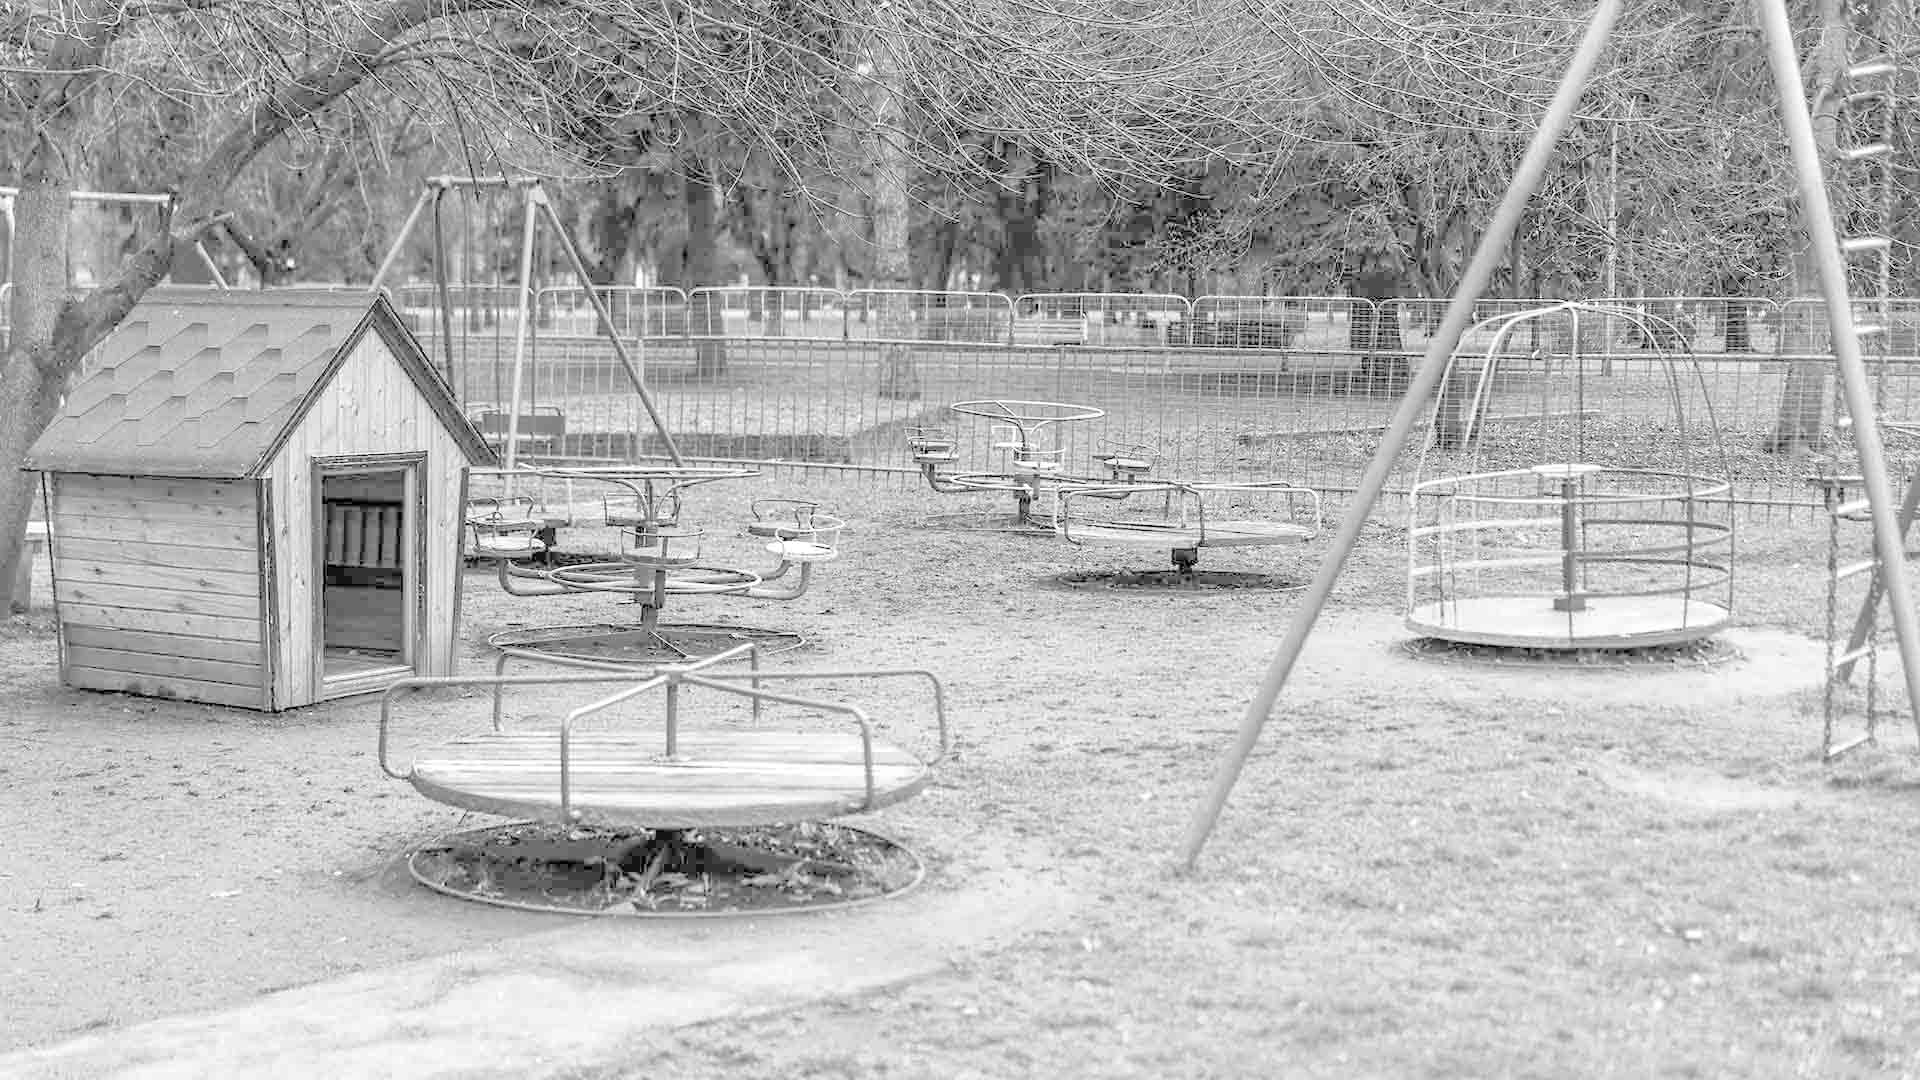 Playground Memories